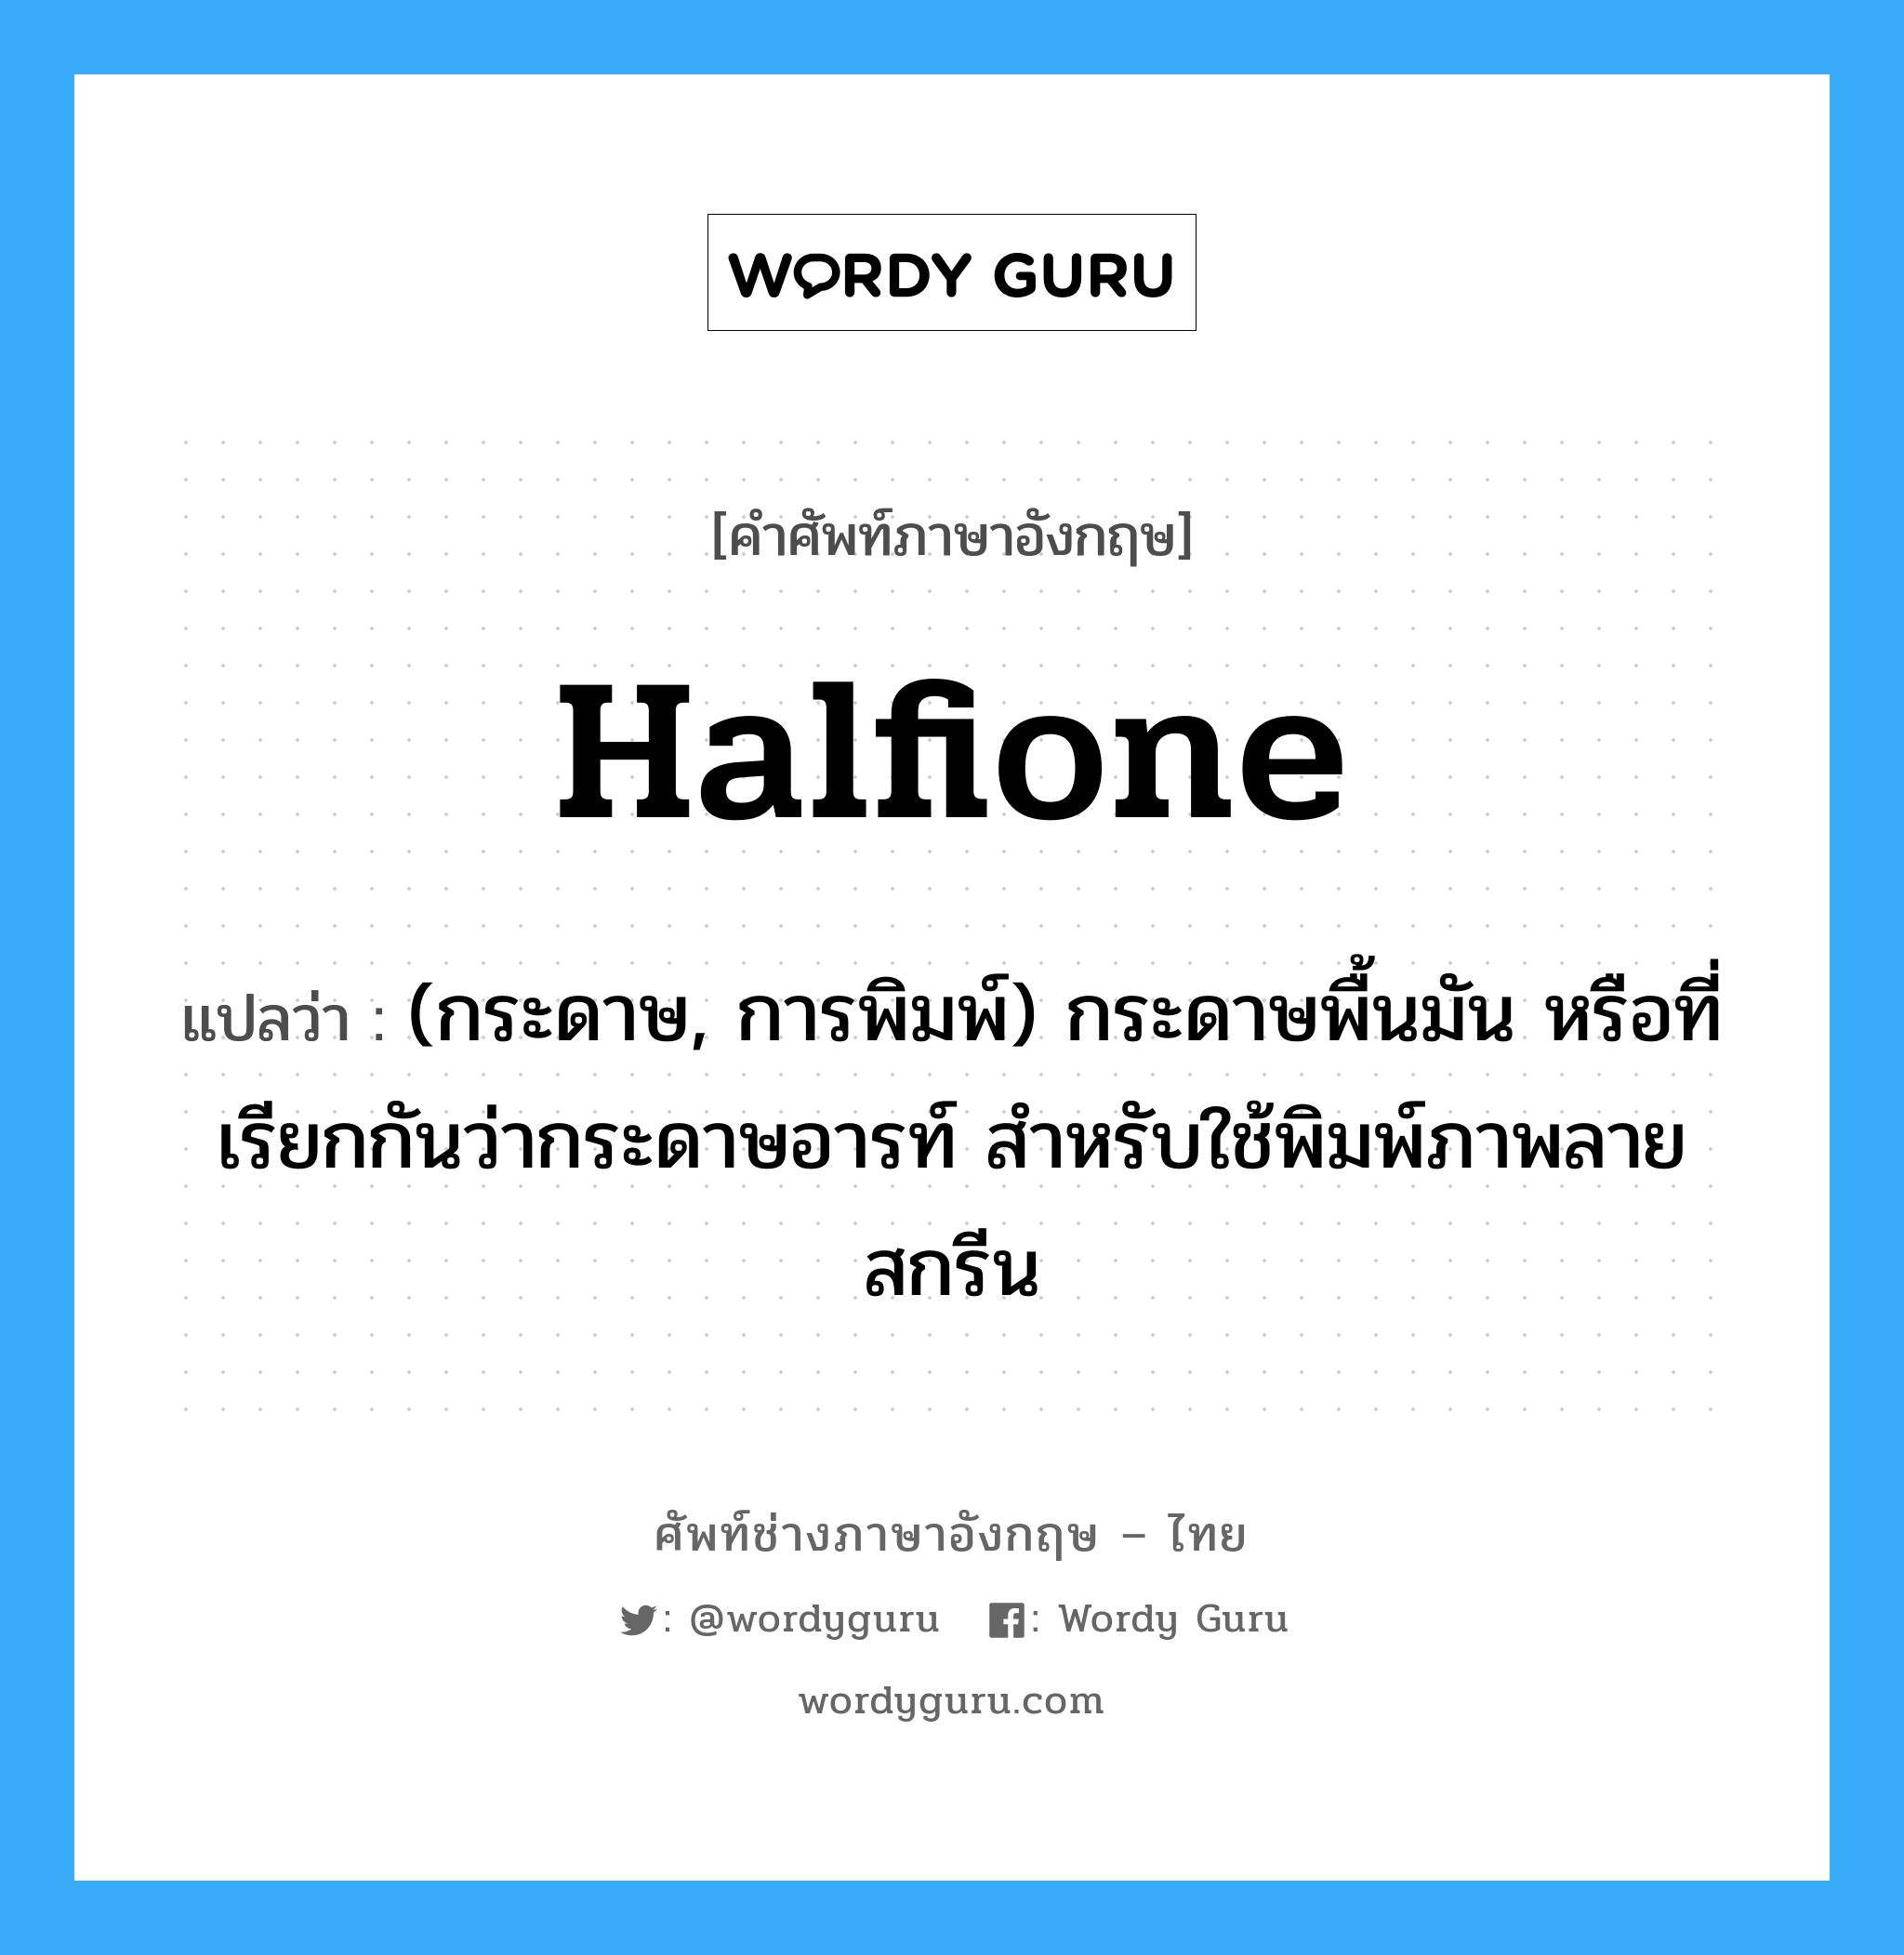 halfione แปลว่า?, คำศัพท์ช่างภาษาอังกฤษ - ไทย halfione คำศัพท์ภาษาอังกฤษ halfione แปลว่า (กระดาษ, การพิมพ์) กระดาษพื้นมัน หรือที่เรียกกันว่ากระดาษอารท์ สำหรับใช้พิมพ์ภาพลายสกรีน